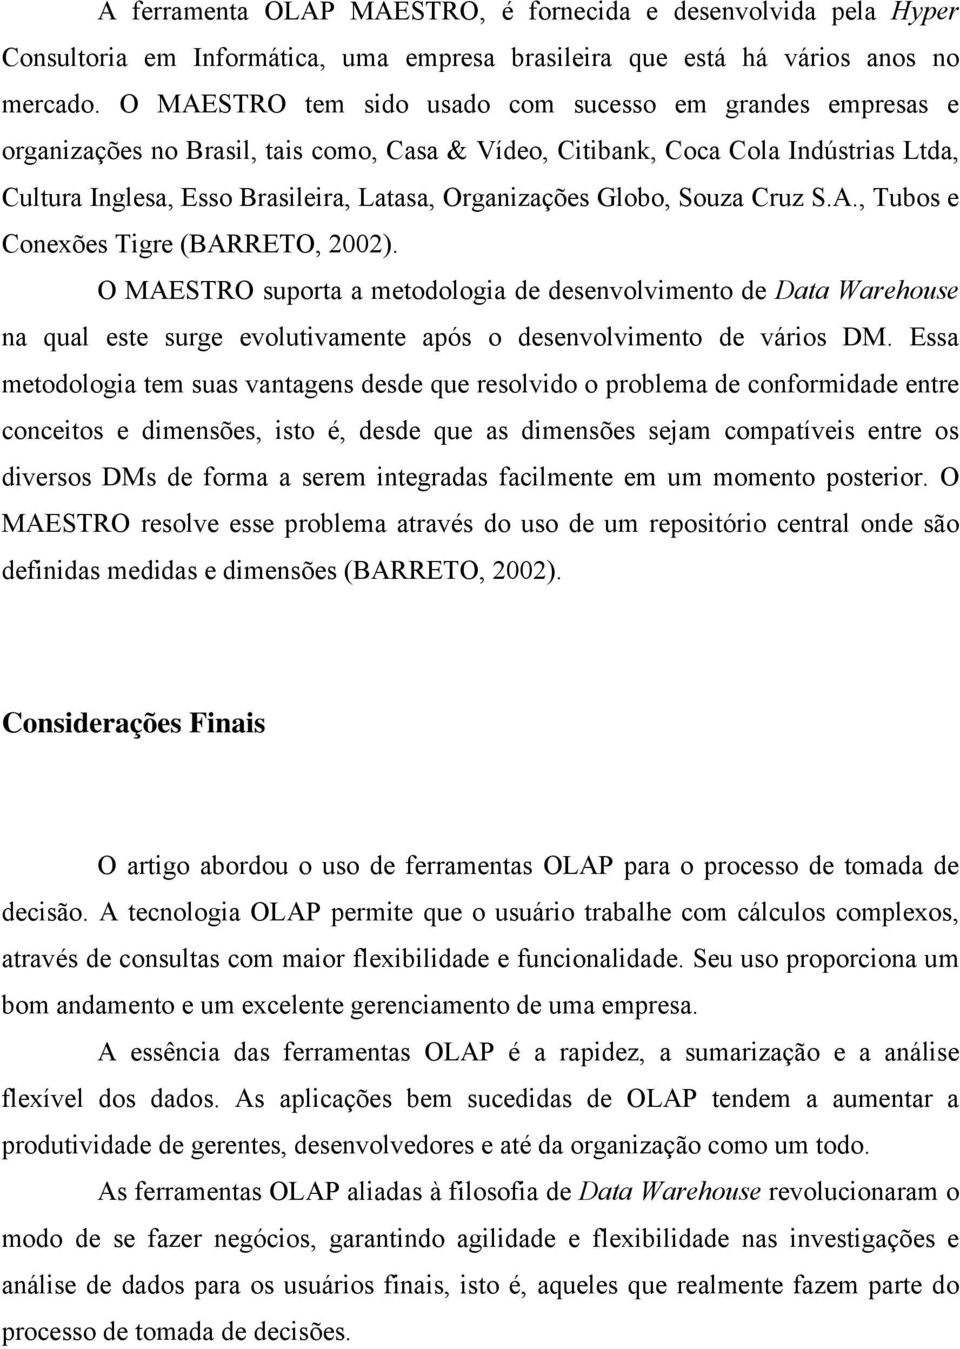 Globo, Souza Cruz S.A., Tubos e Conexões Tigre (BARRETO, 2002).